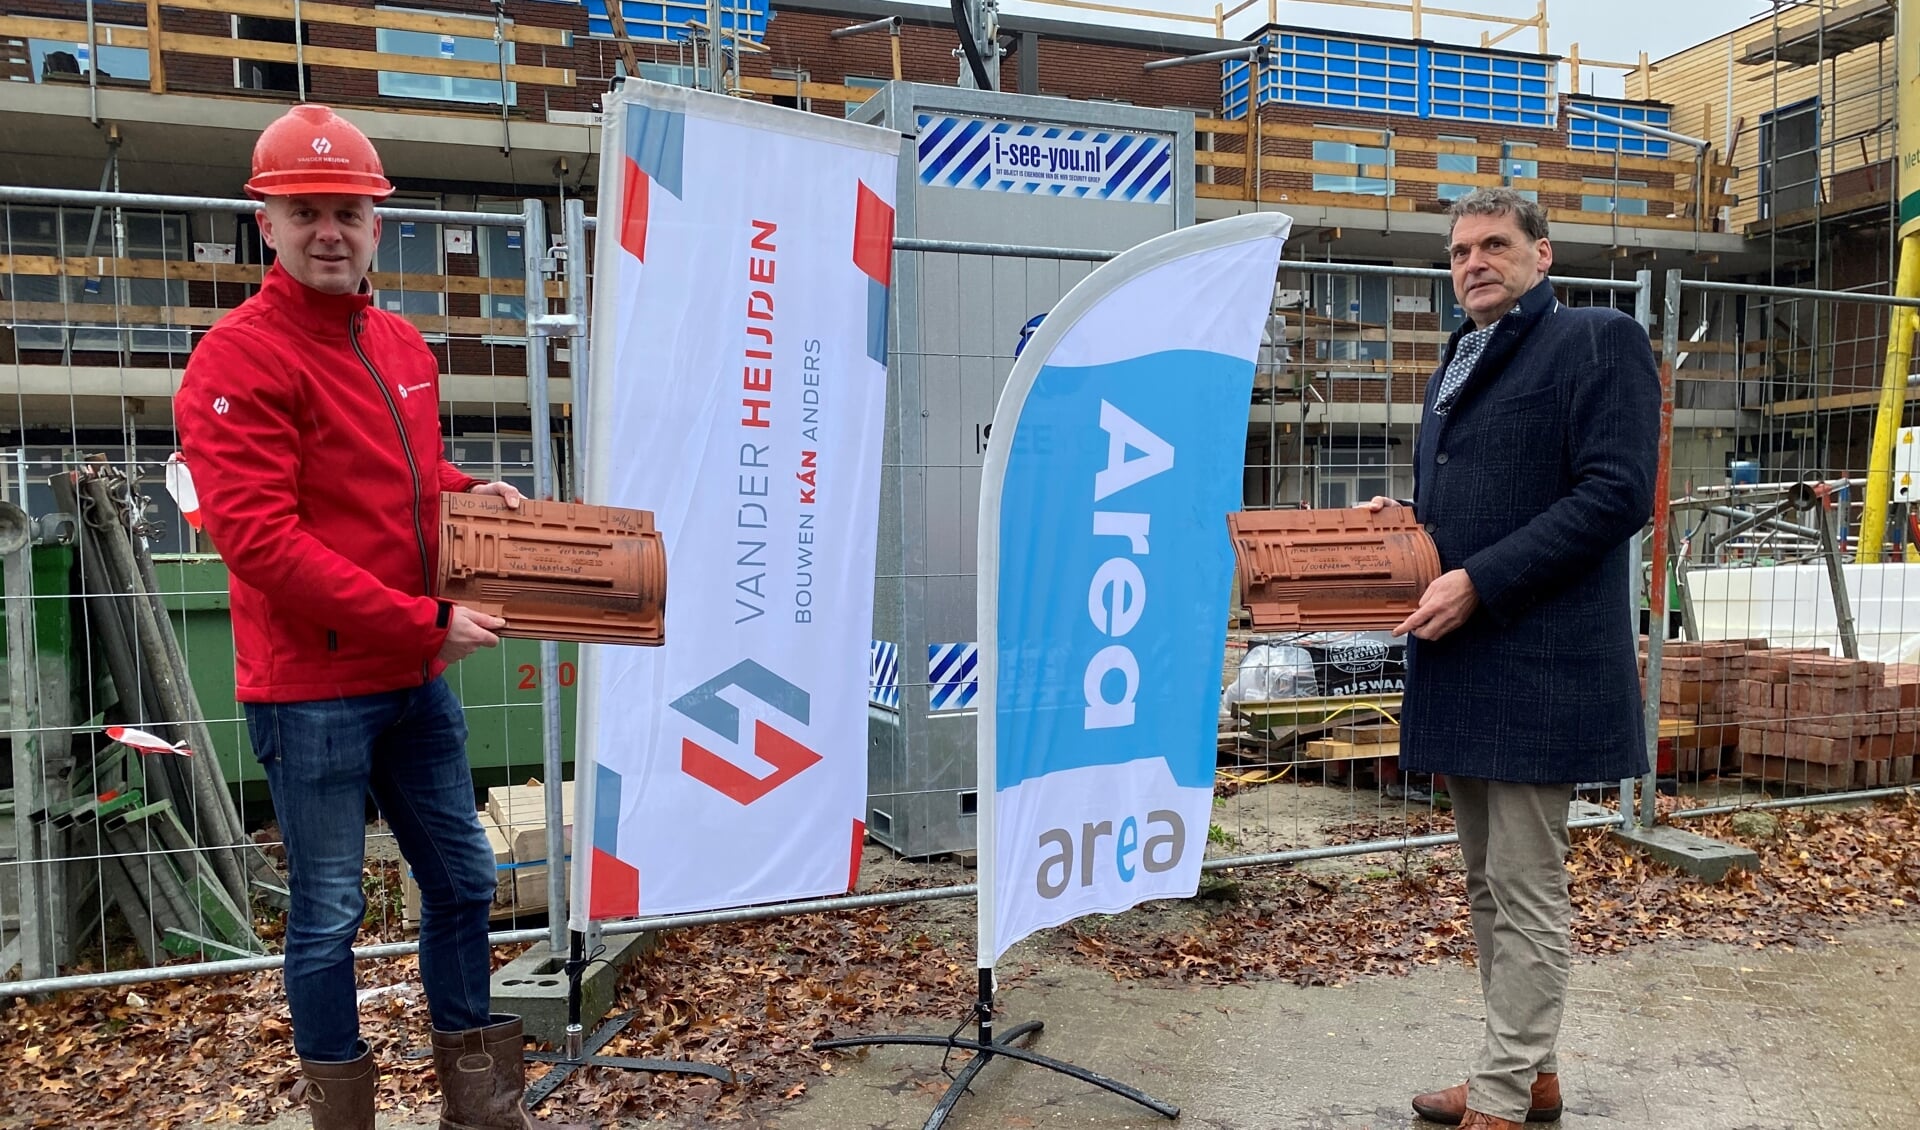 Jan van Vucht (Area) en Ferry Verstappen (Van der Heijden bouw en ontwikkeling) schreven op een dakpan hun boodschap aan de toekomstige bewoners